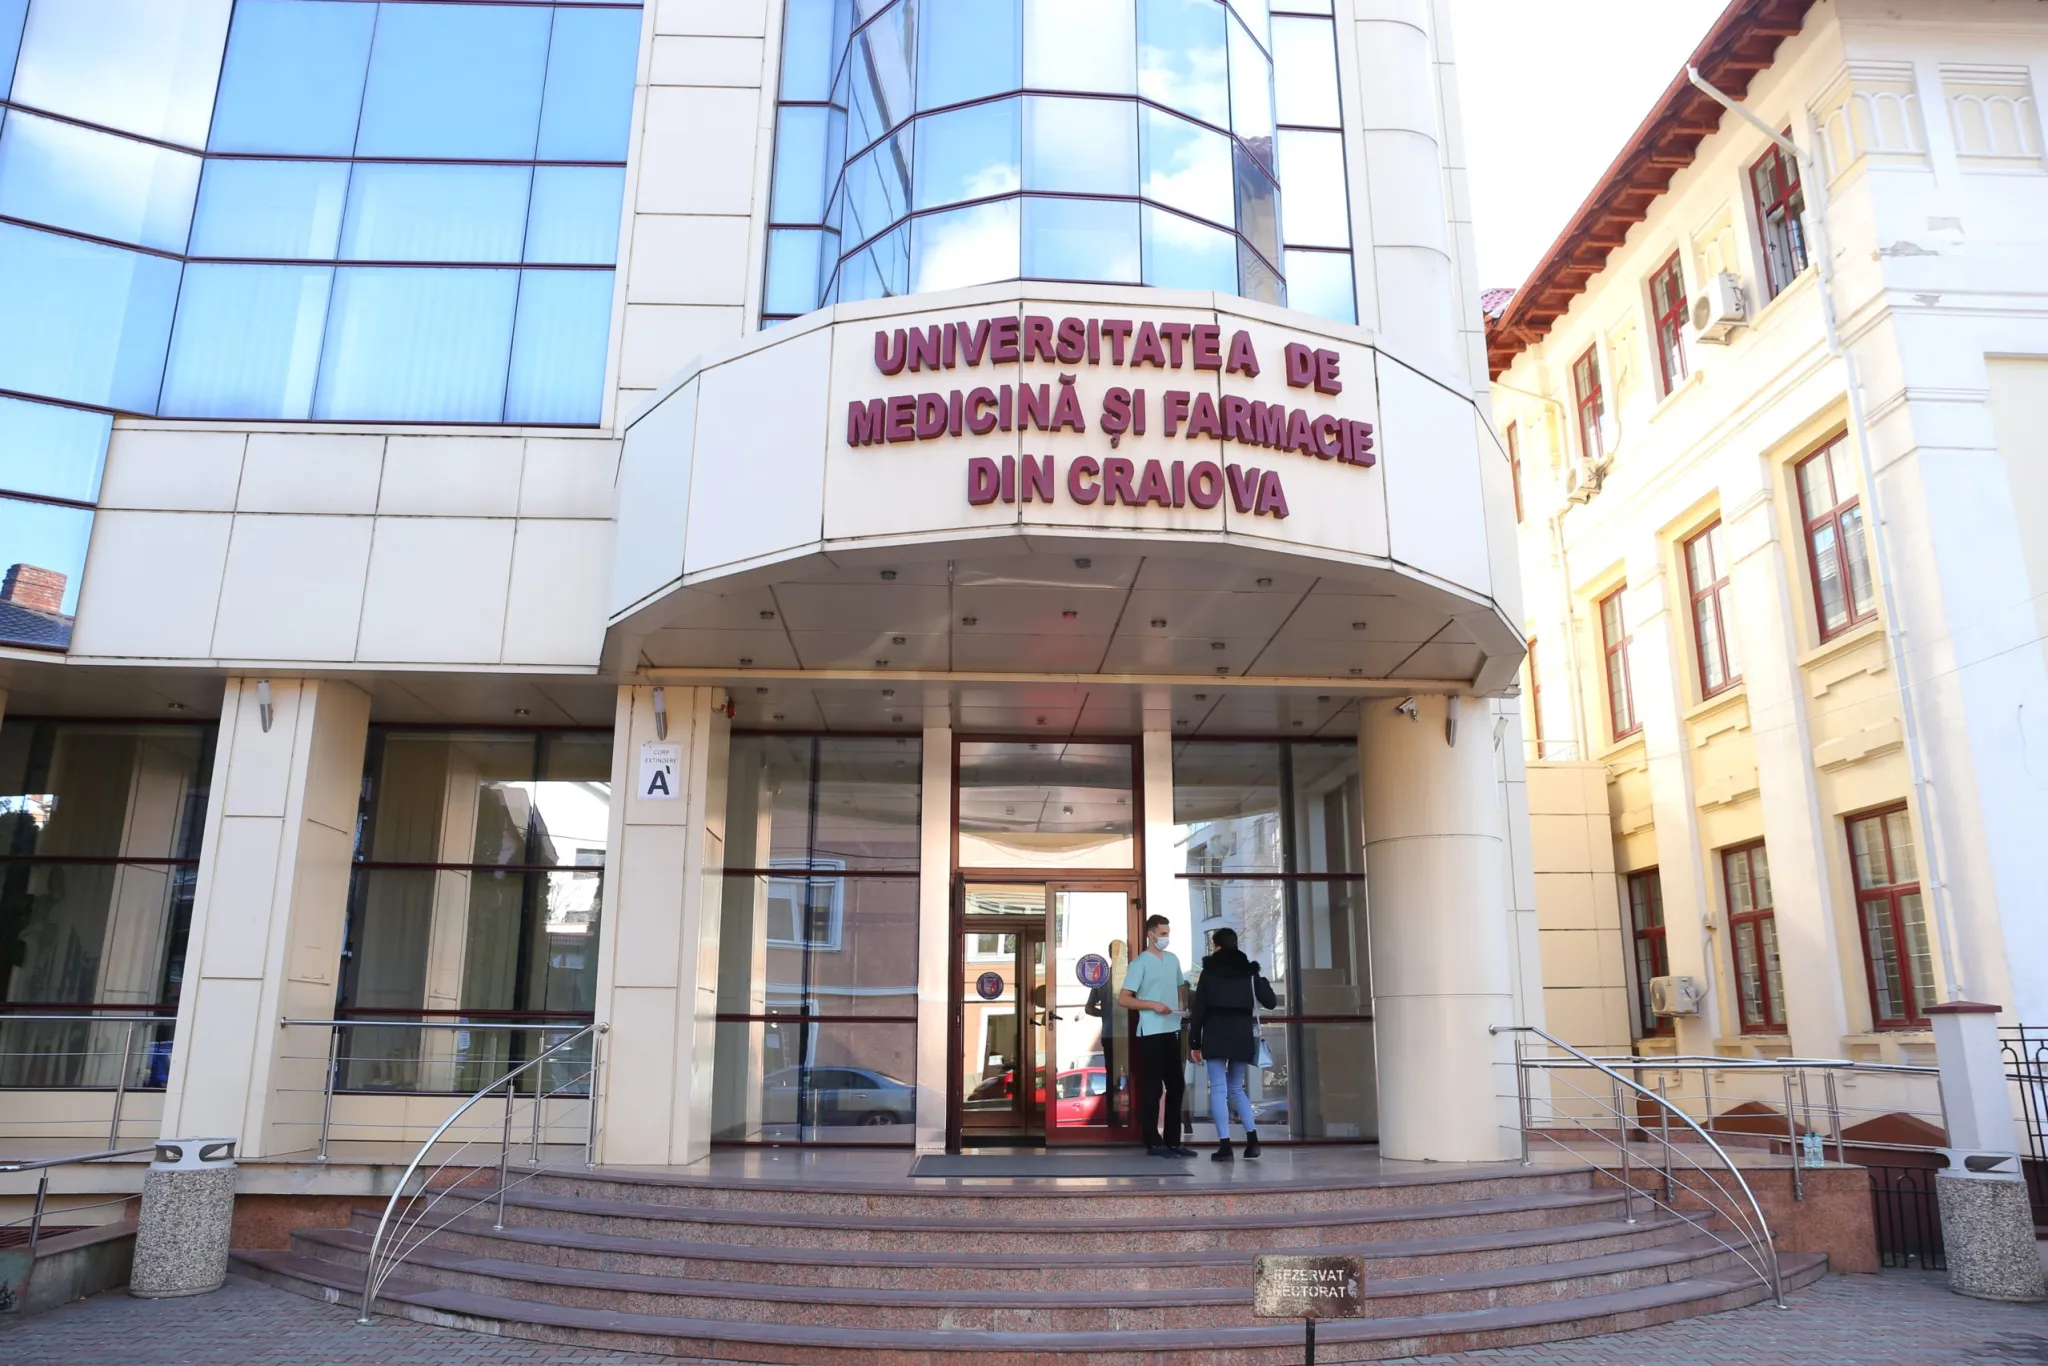 765 de locuri la admitere la Universitatea de Medicină şi Farmacie din Craiova – 5 locuri pentru candidaţii romi